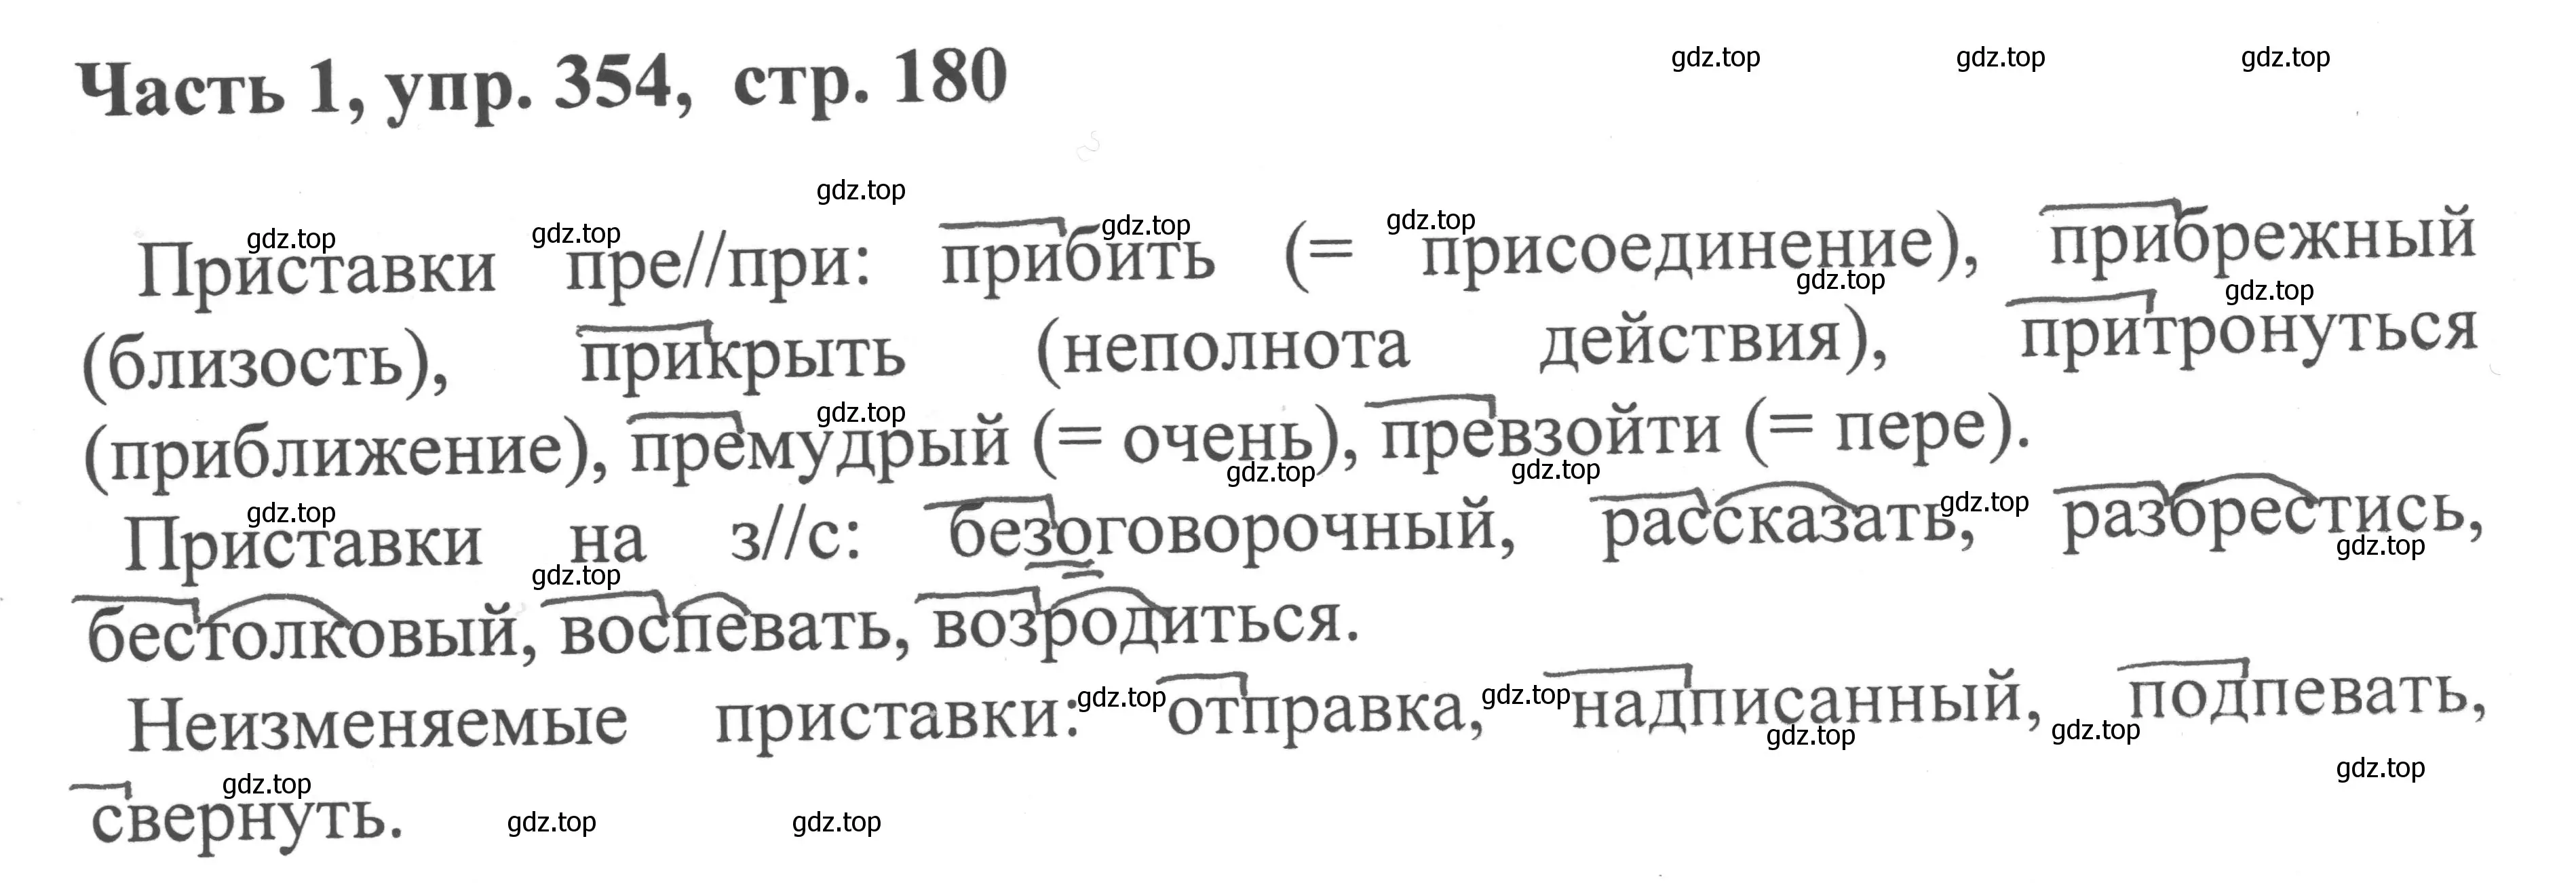 Решение номер 354 (страница 180) гдз по русскому языку 6 класс Баранов, Ладыженская, учебник 1 часть